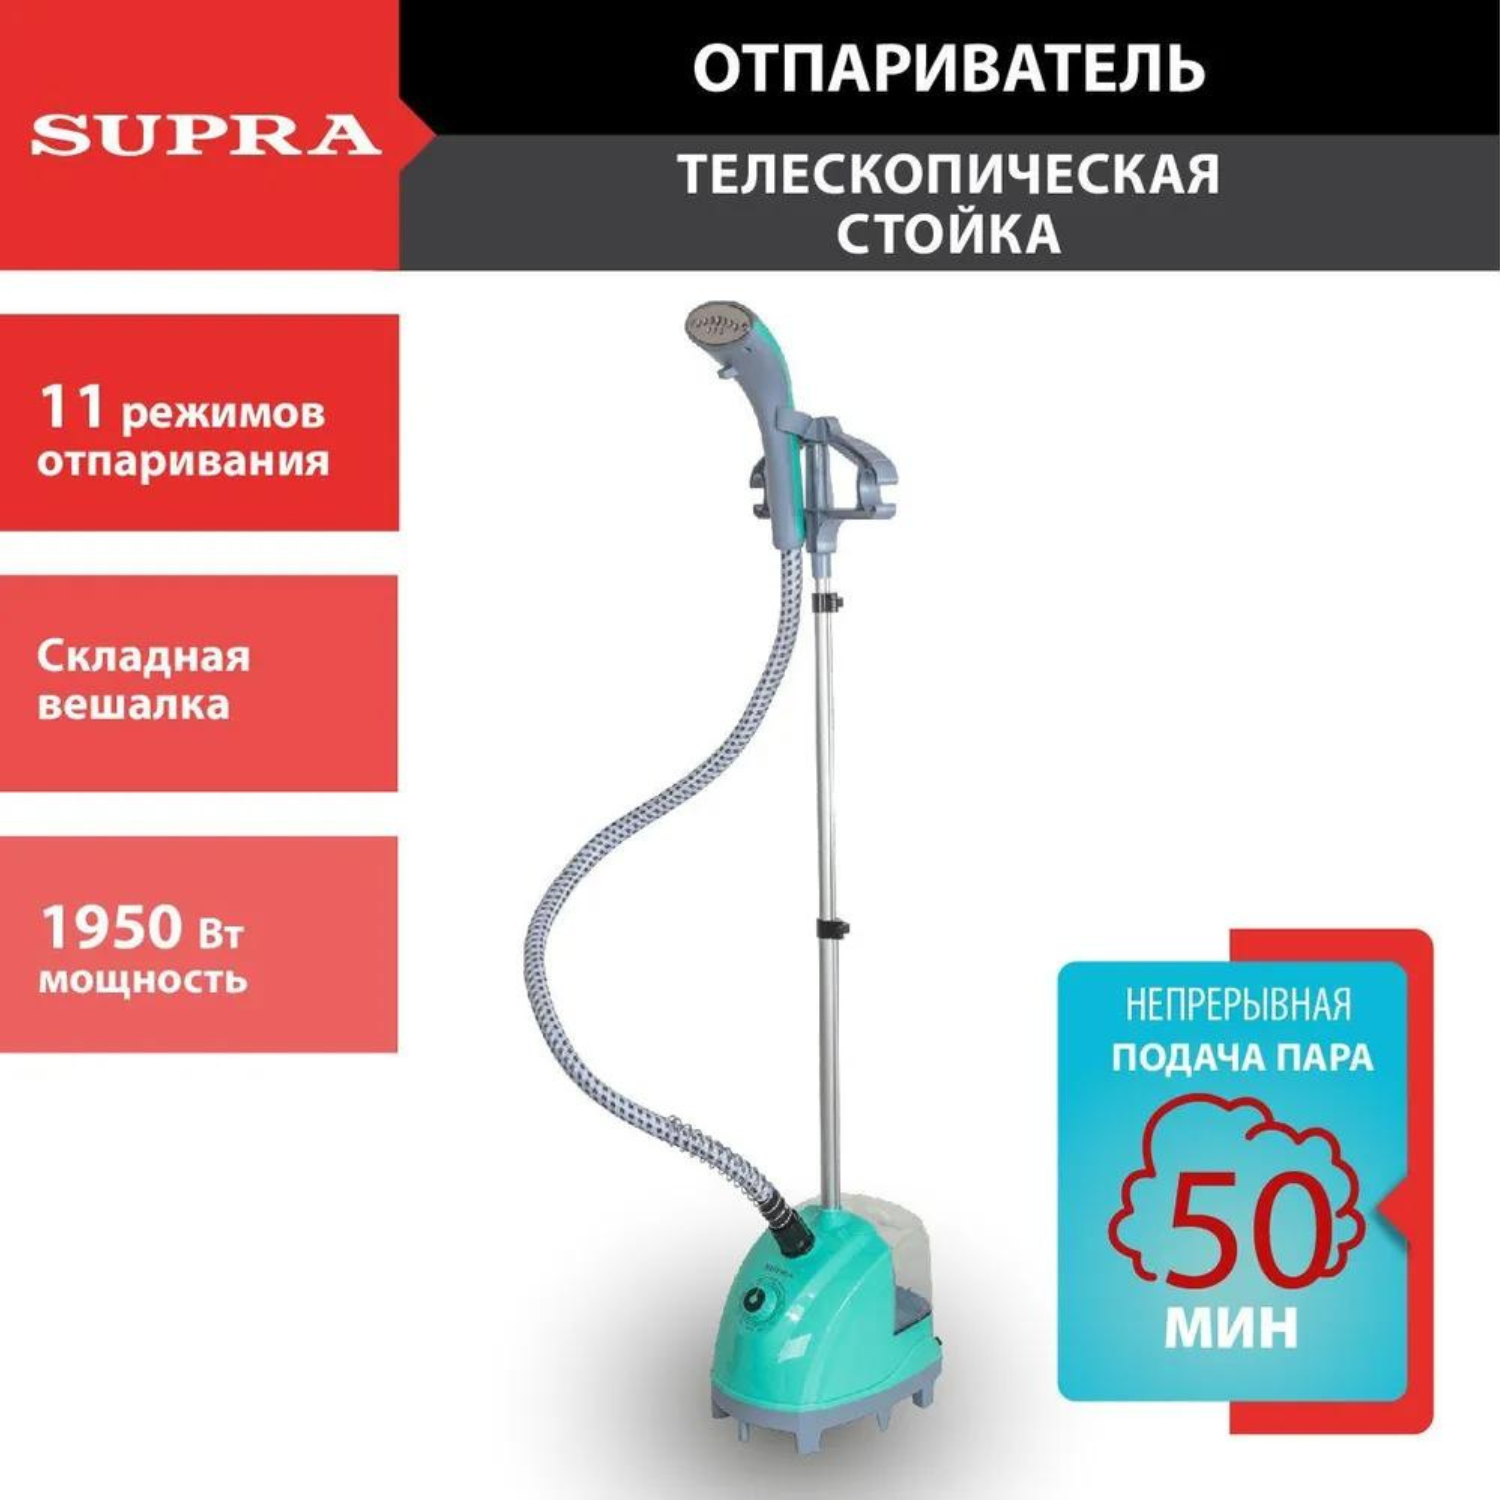 Вертикальный отпариватель Supra SBS-170 1.3 л голубой вертикальный отпариватель supra sbs 203 1 7 л фиолетовый